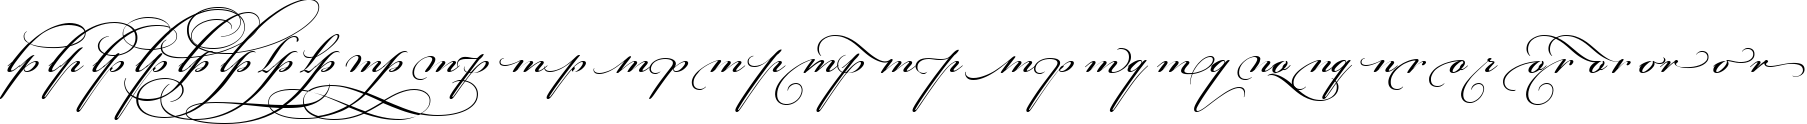 Пример написания английского алфавита шрифтом Bickham Script Alt Three